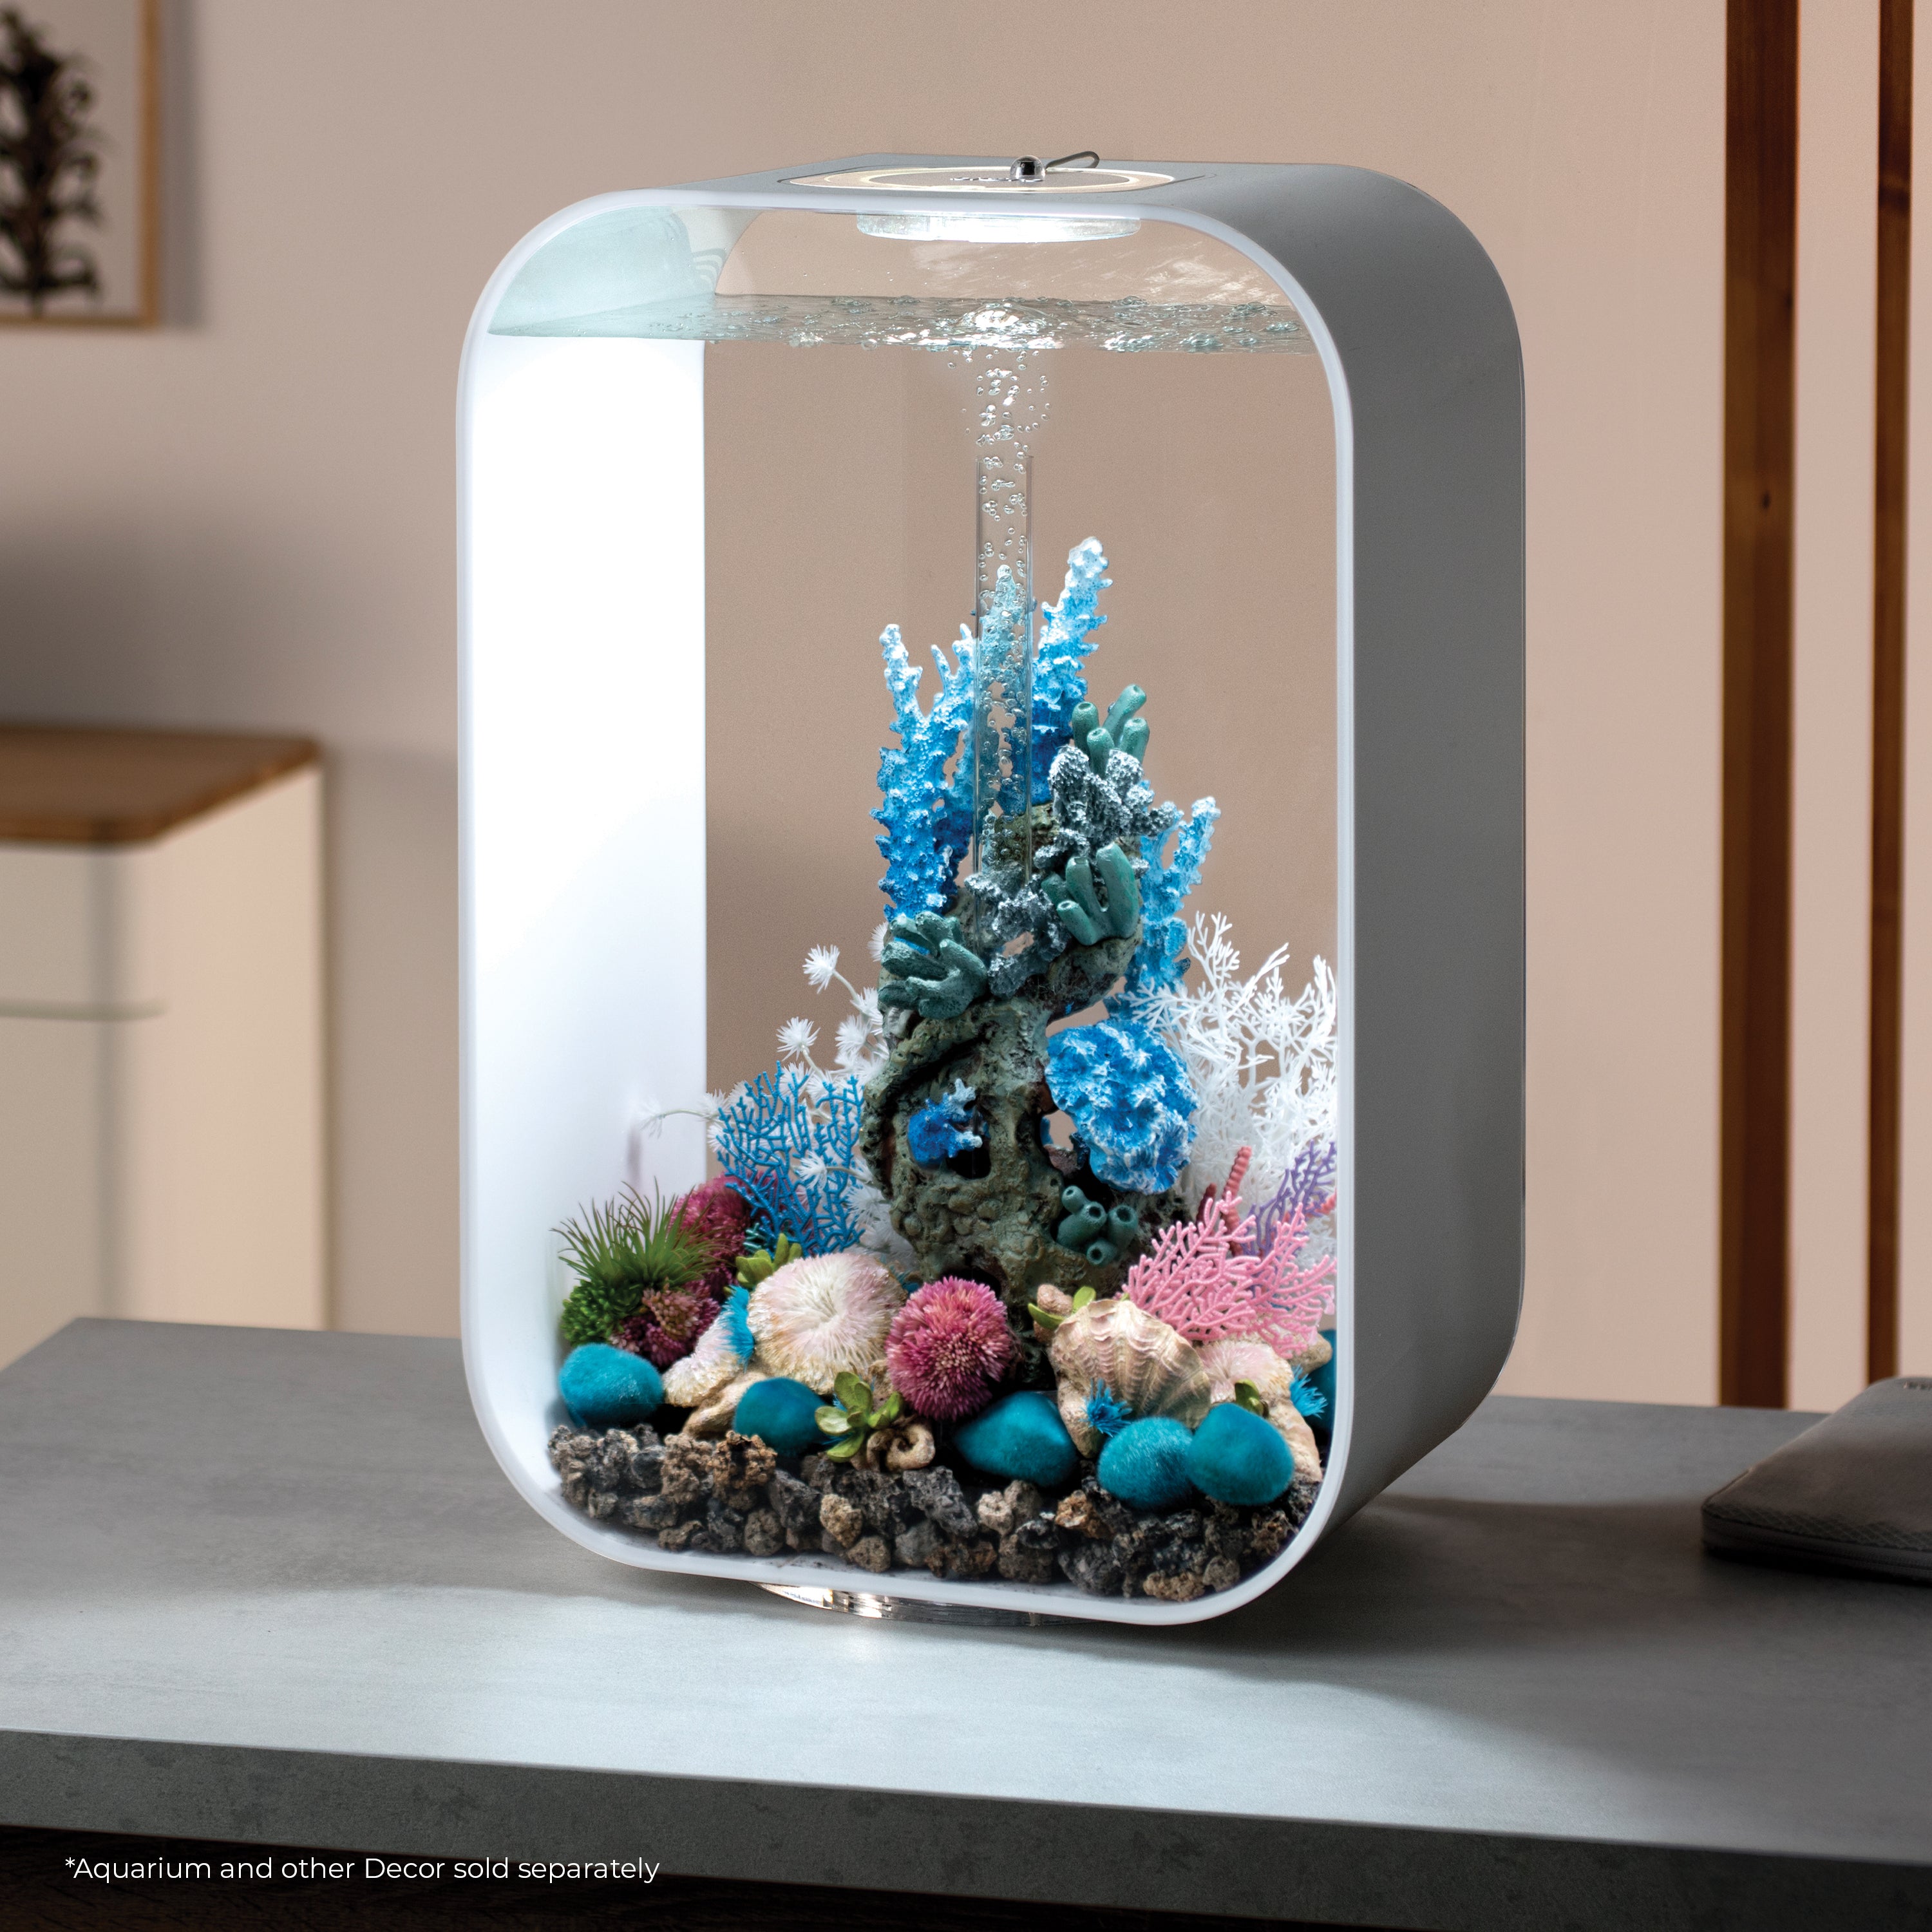 Decorative Aquarium Moss Fish Tank Decoration Balls Pebble